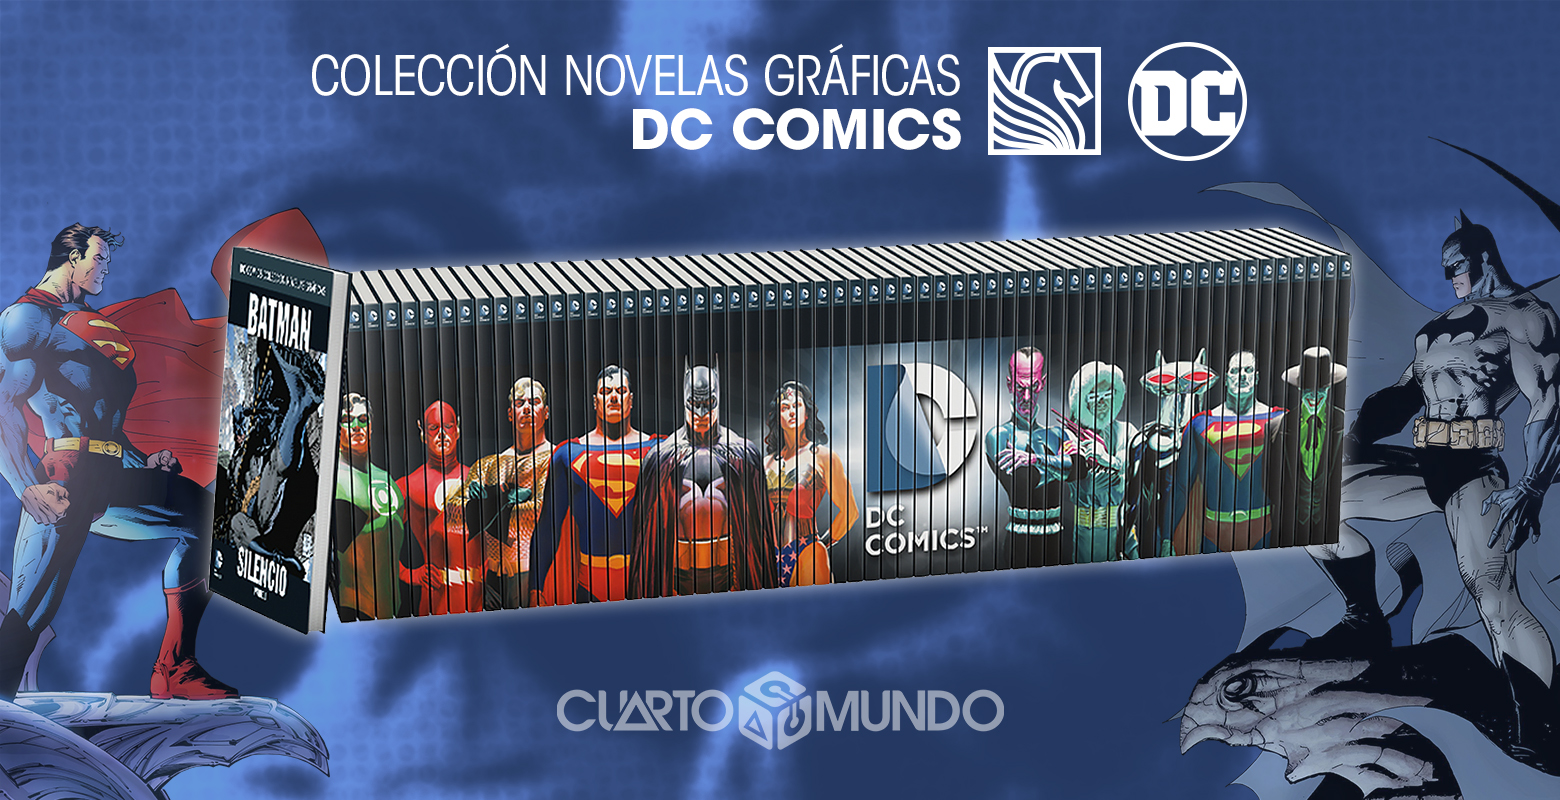 toque concierto águila Colección Novelas Gráficas DC Comics: Salvat ataca de nuevo • Cuarto Mundo